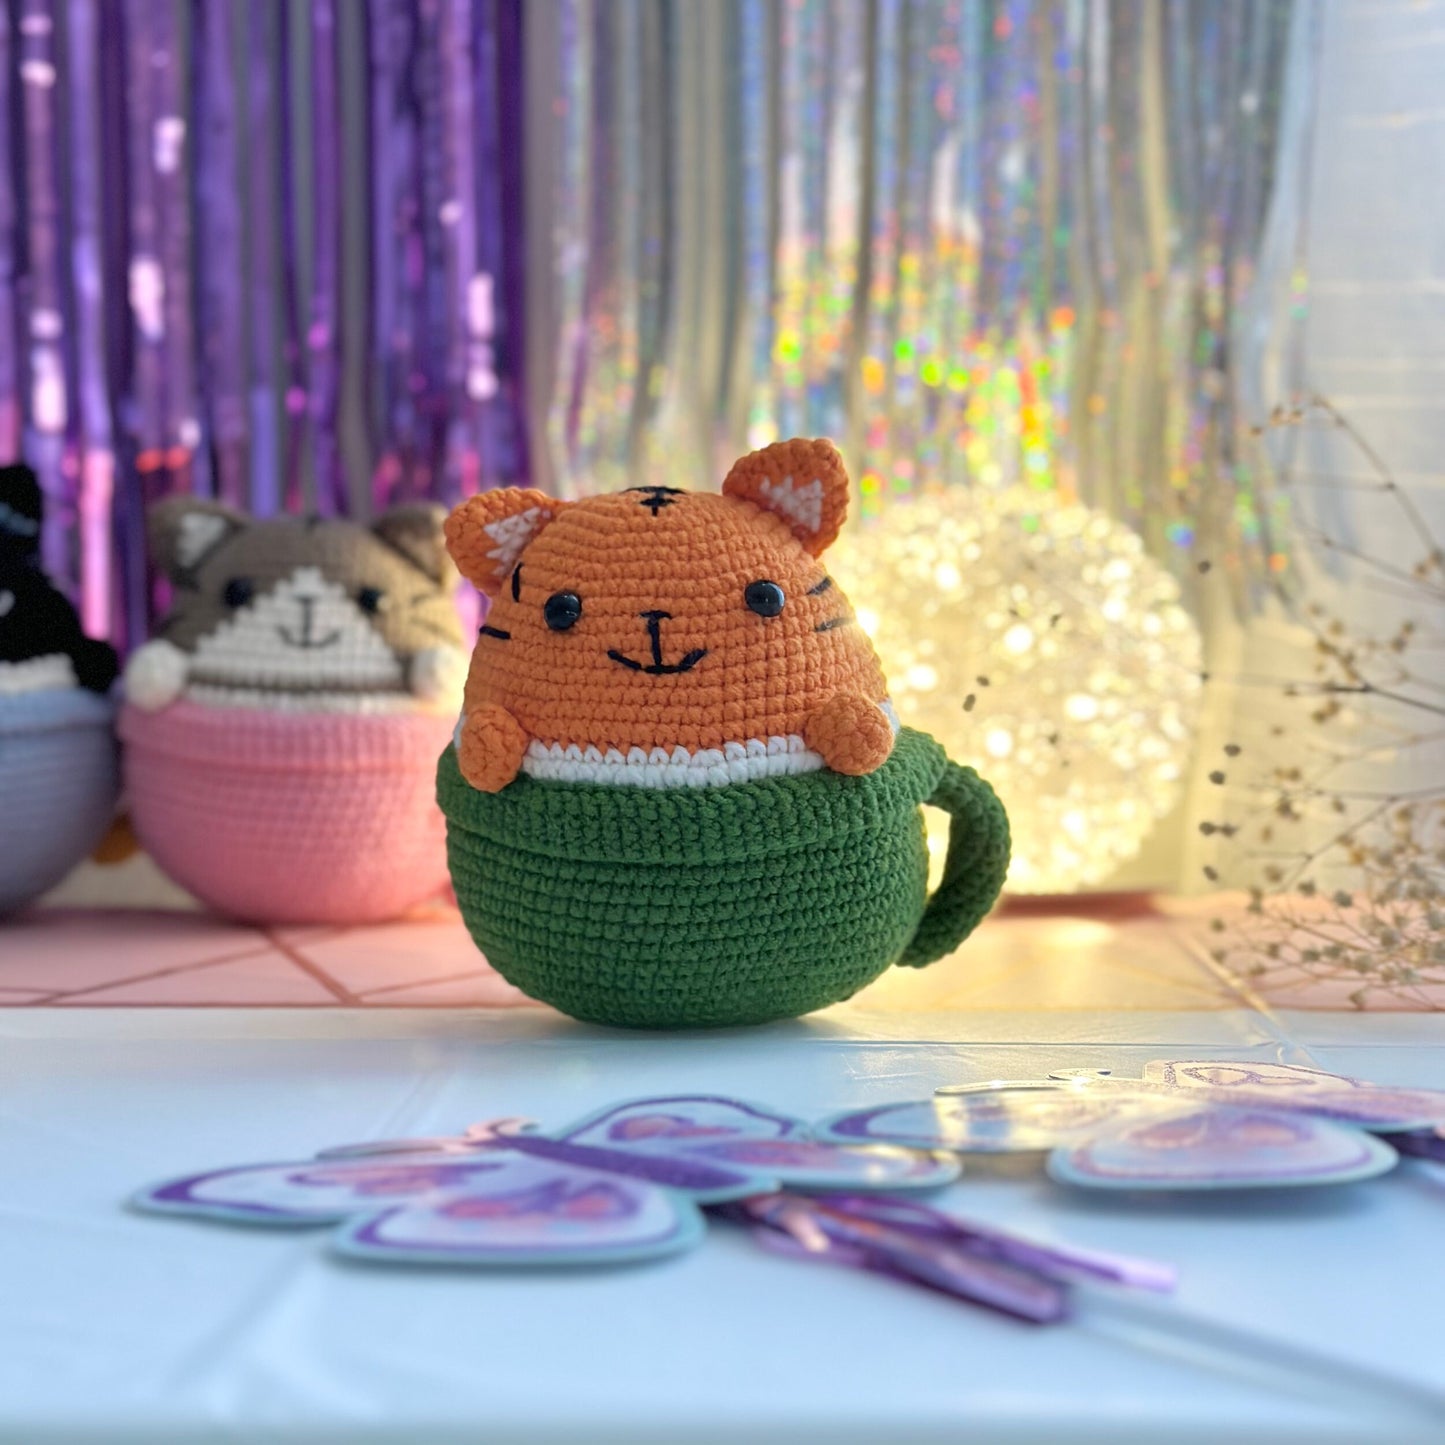 Handmade Kitten in the cup, crochet Kitten in the cup, amigurumi Kitten in the cup, soft toy for baby, toddler, kid, adult hobby